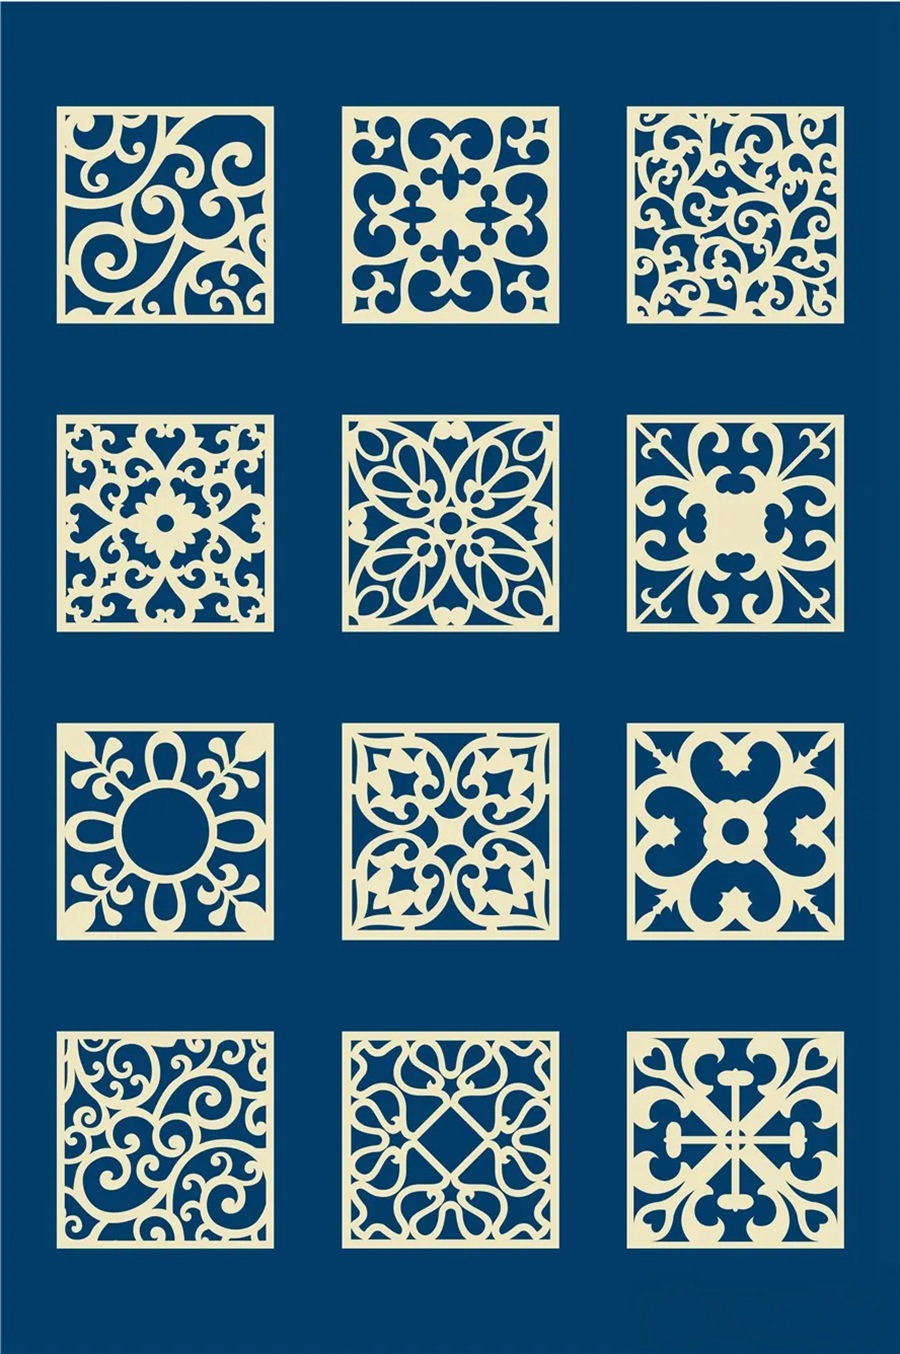 中国风传统古典青花瓷图案花纹图形纹样AI矢量模板花纹设计素材 图片素材 第6张